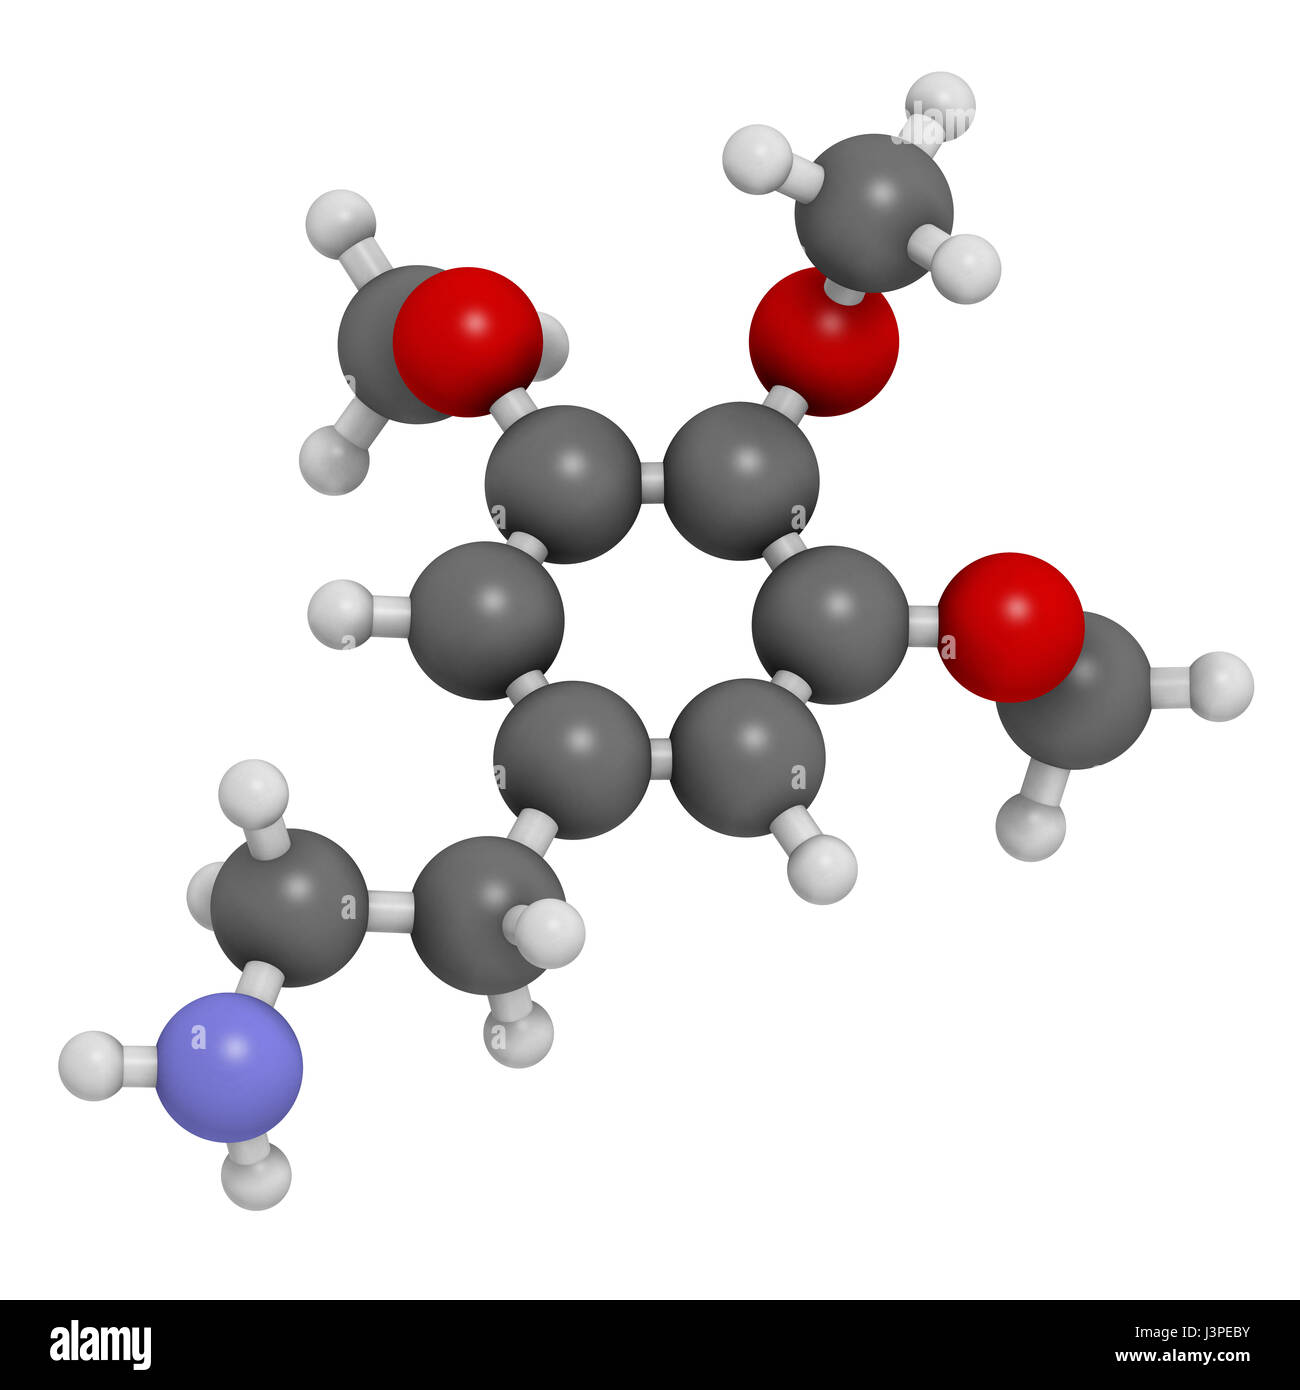 Meskalin Peyote Kaktus psychedelischen Molekül. Atome sind als Kugeln mit konventionellen Farbcodierung vertreten: Wasserstoff (weiß), Kohlenstoff (grau), Sauerstoff Stockfoto